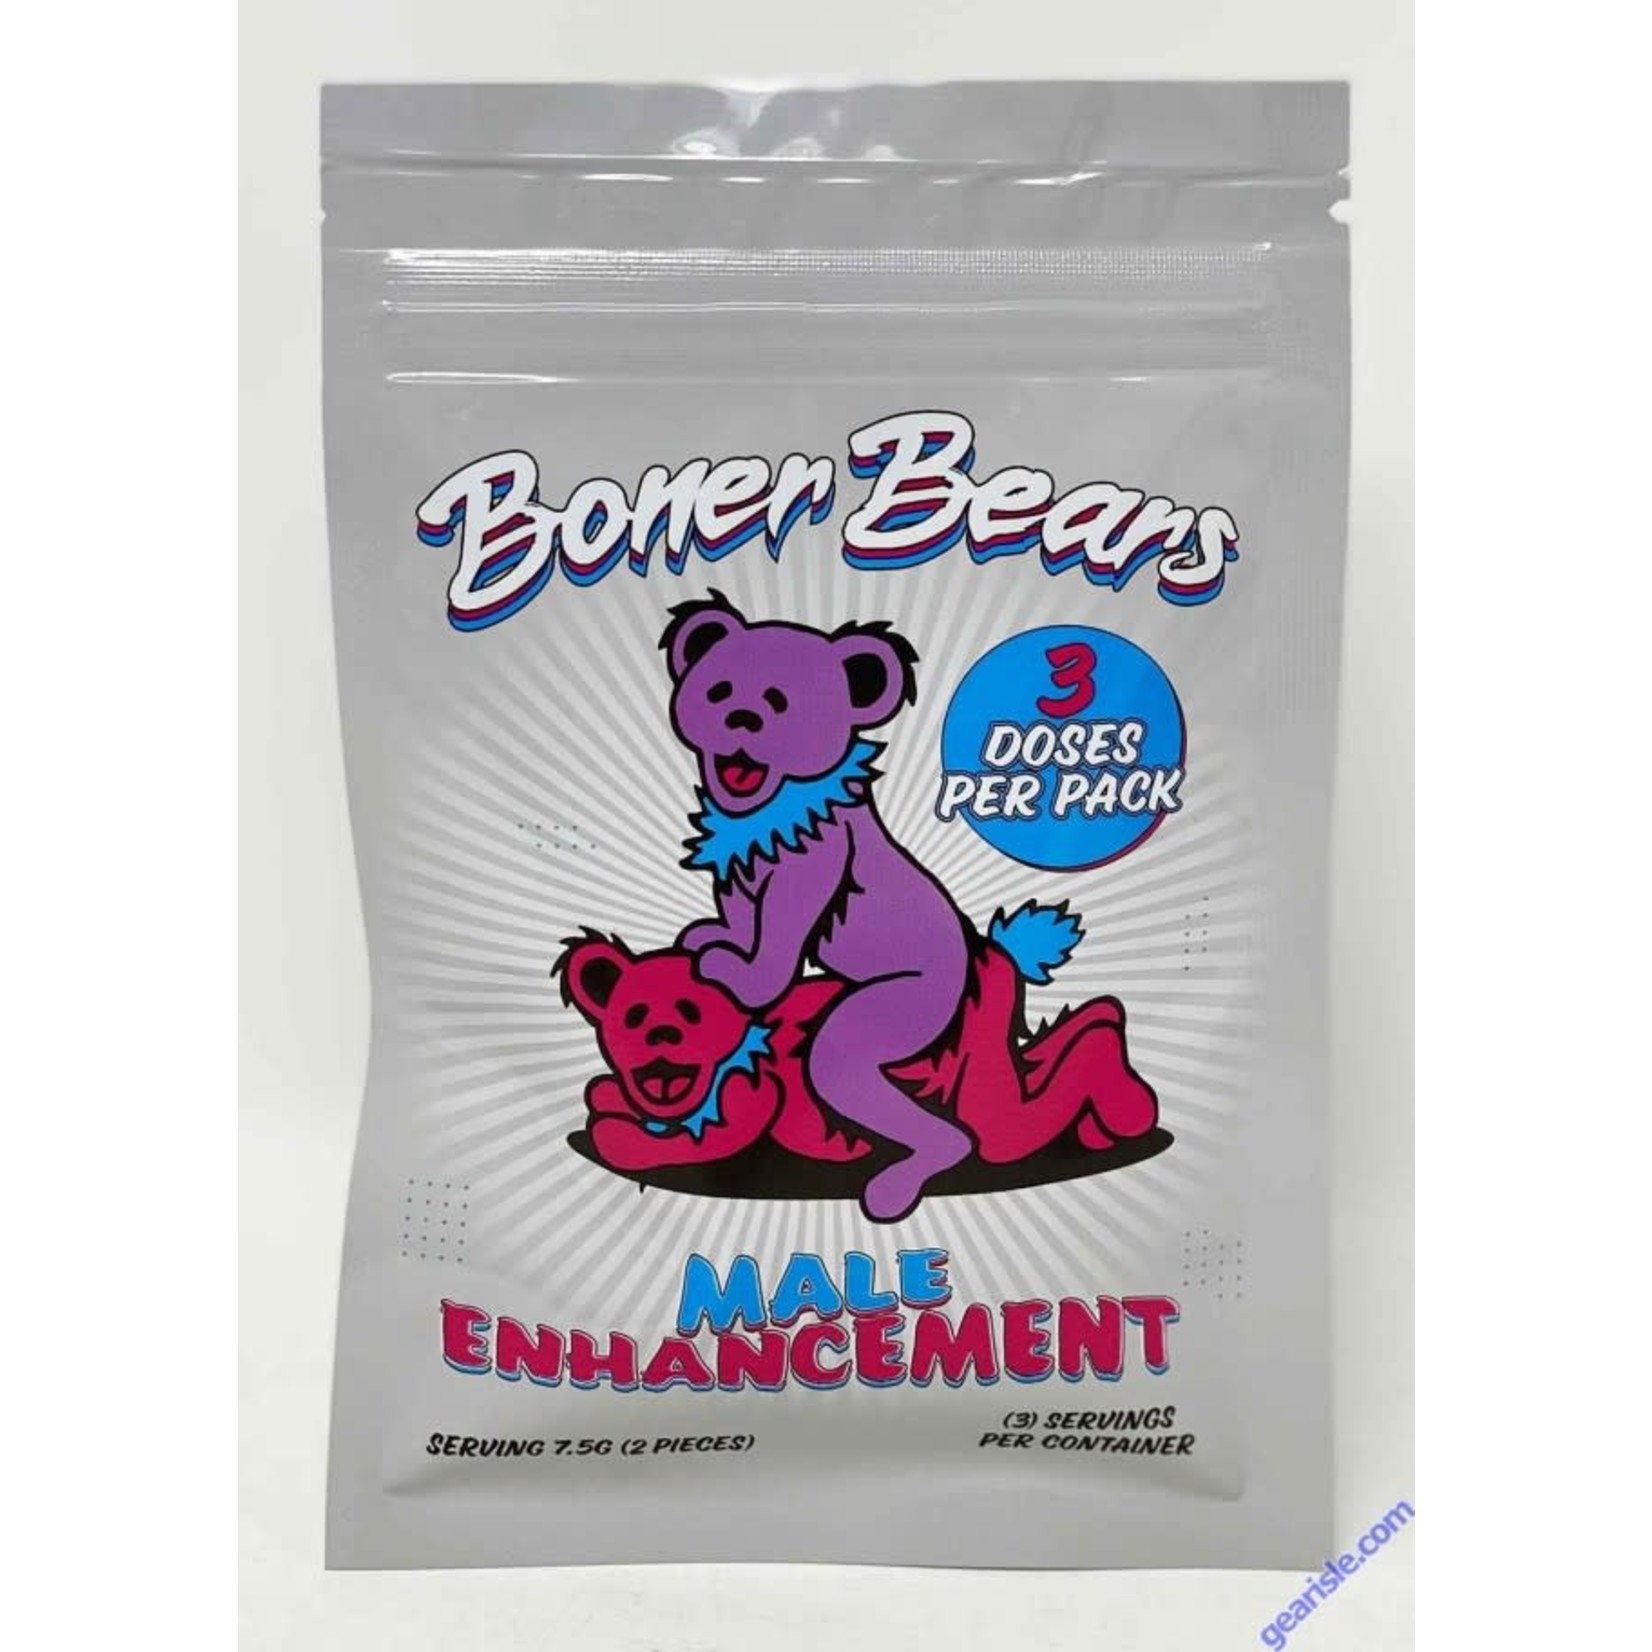 Boner Bears for him